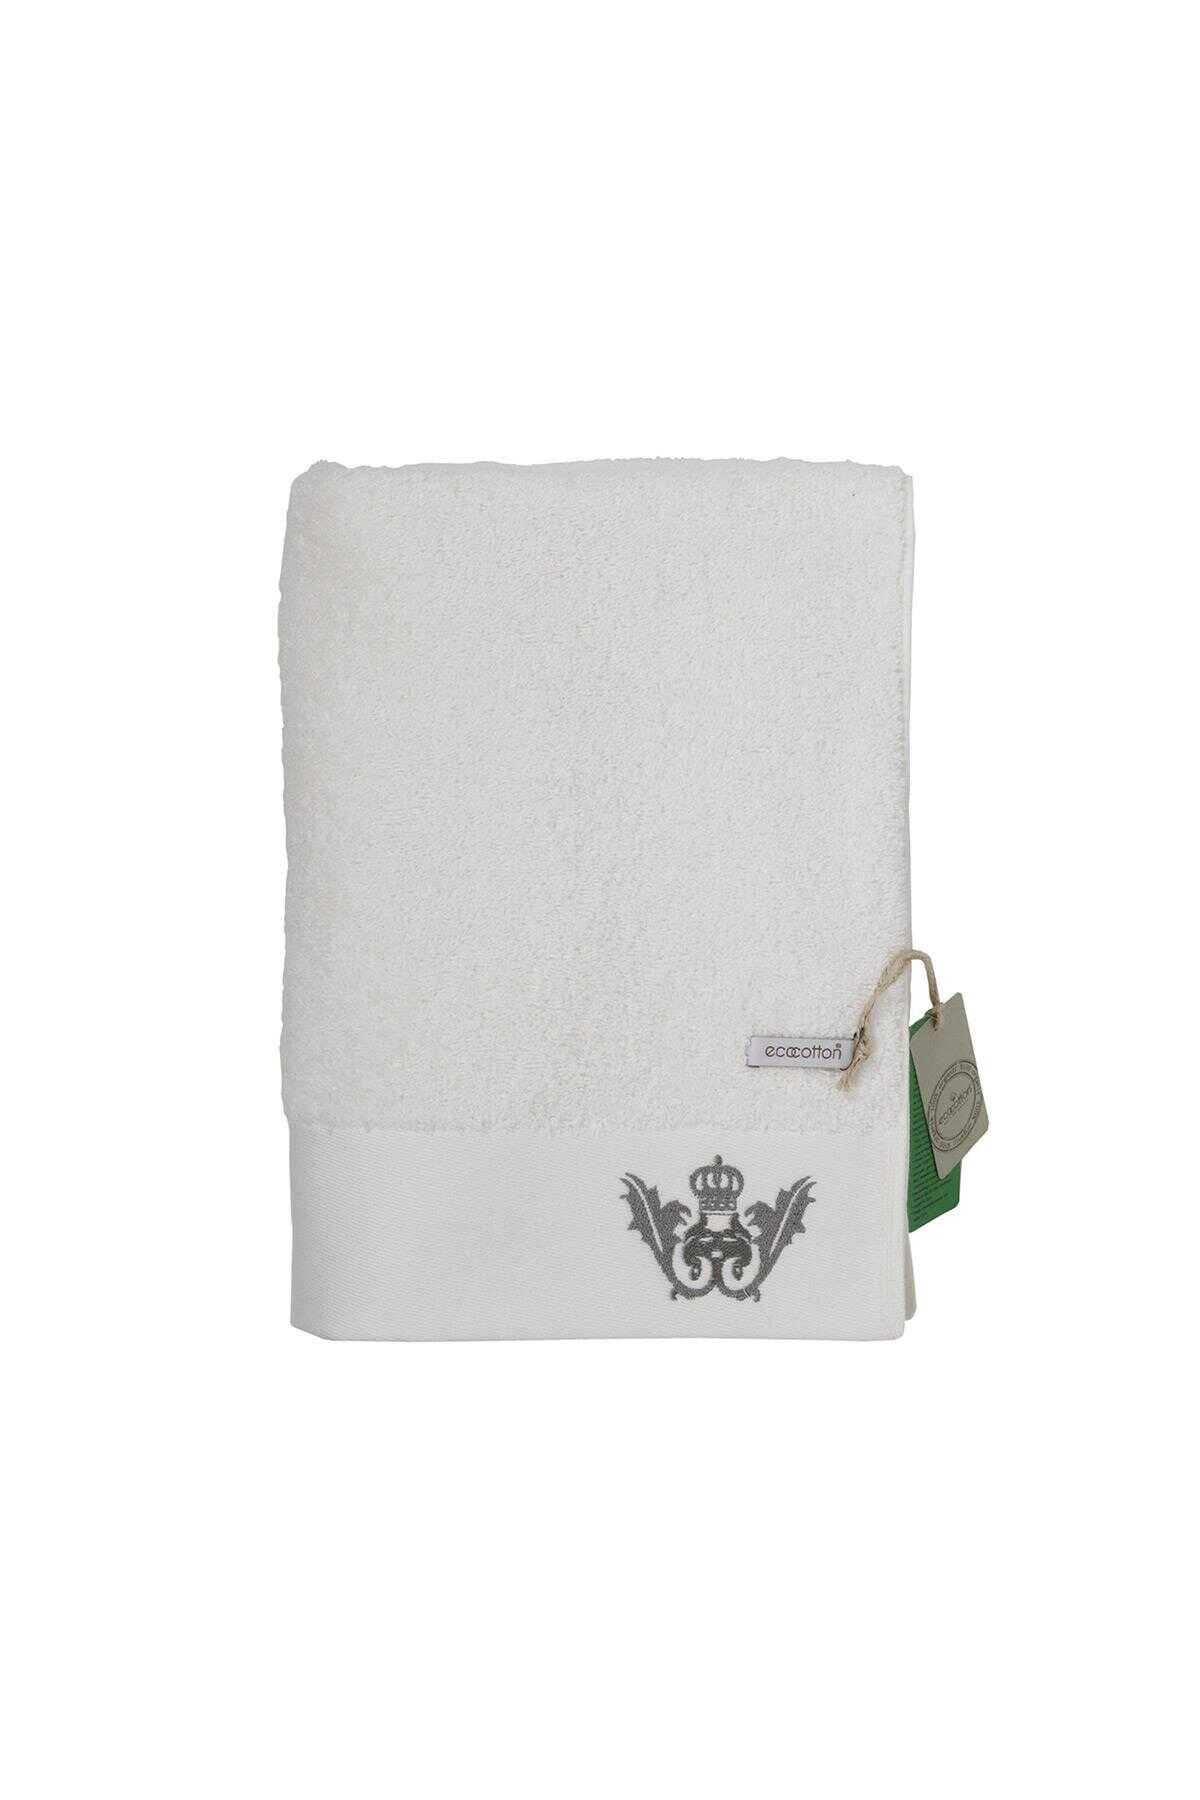 Ecocotton Azra Cotton Men's Bath Towel 